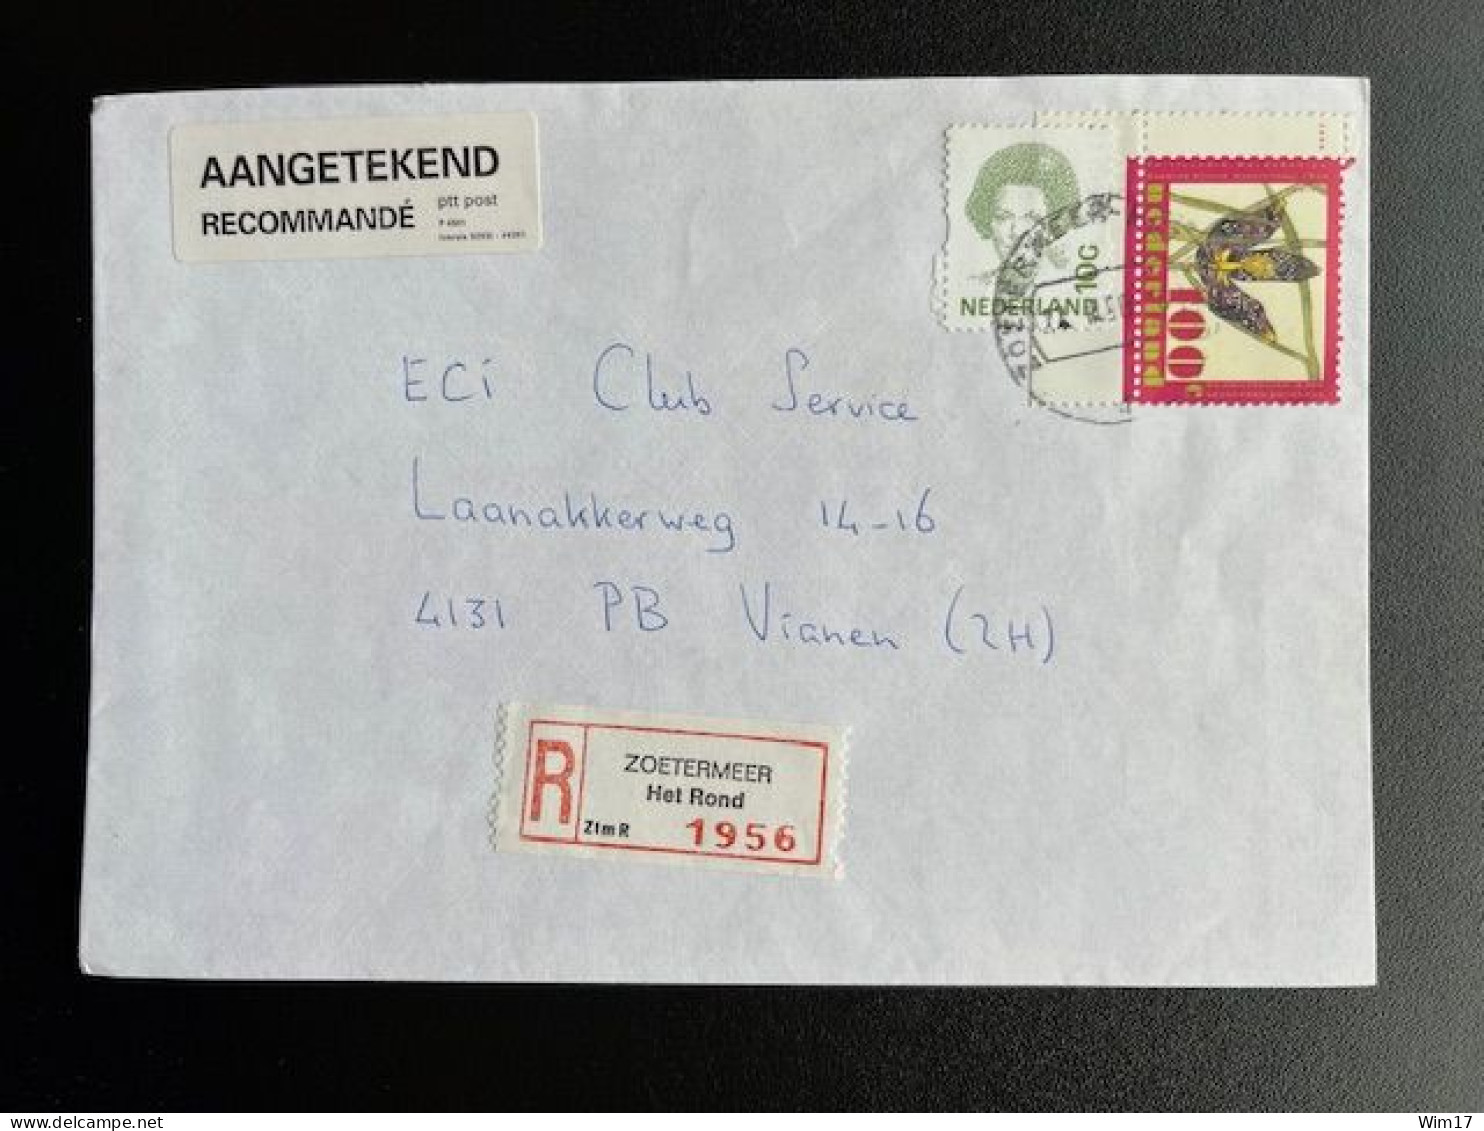 NETHERLANDS 1996 REGISTERED LETTER ZOETERMEER HET ROND TO VIANEN 22-03-1996 NEDERLAND AANGETEKEND - Covers & Documents